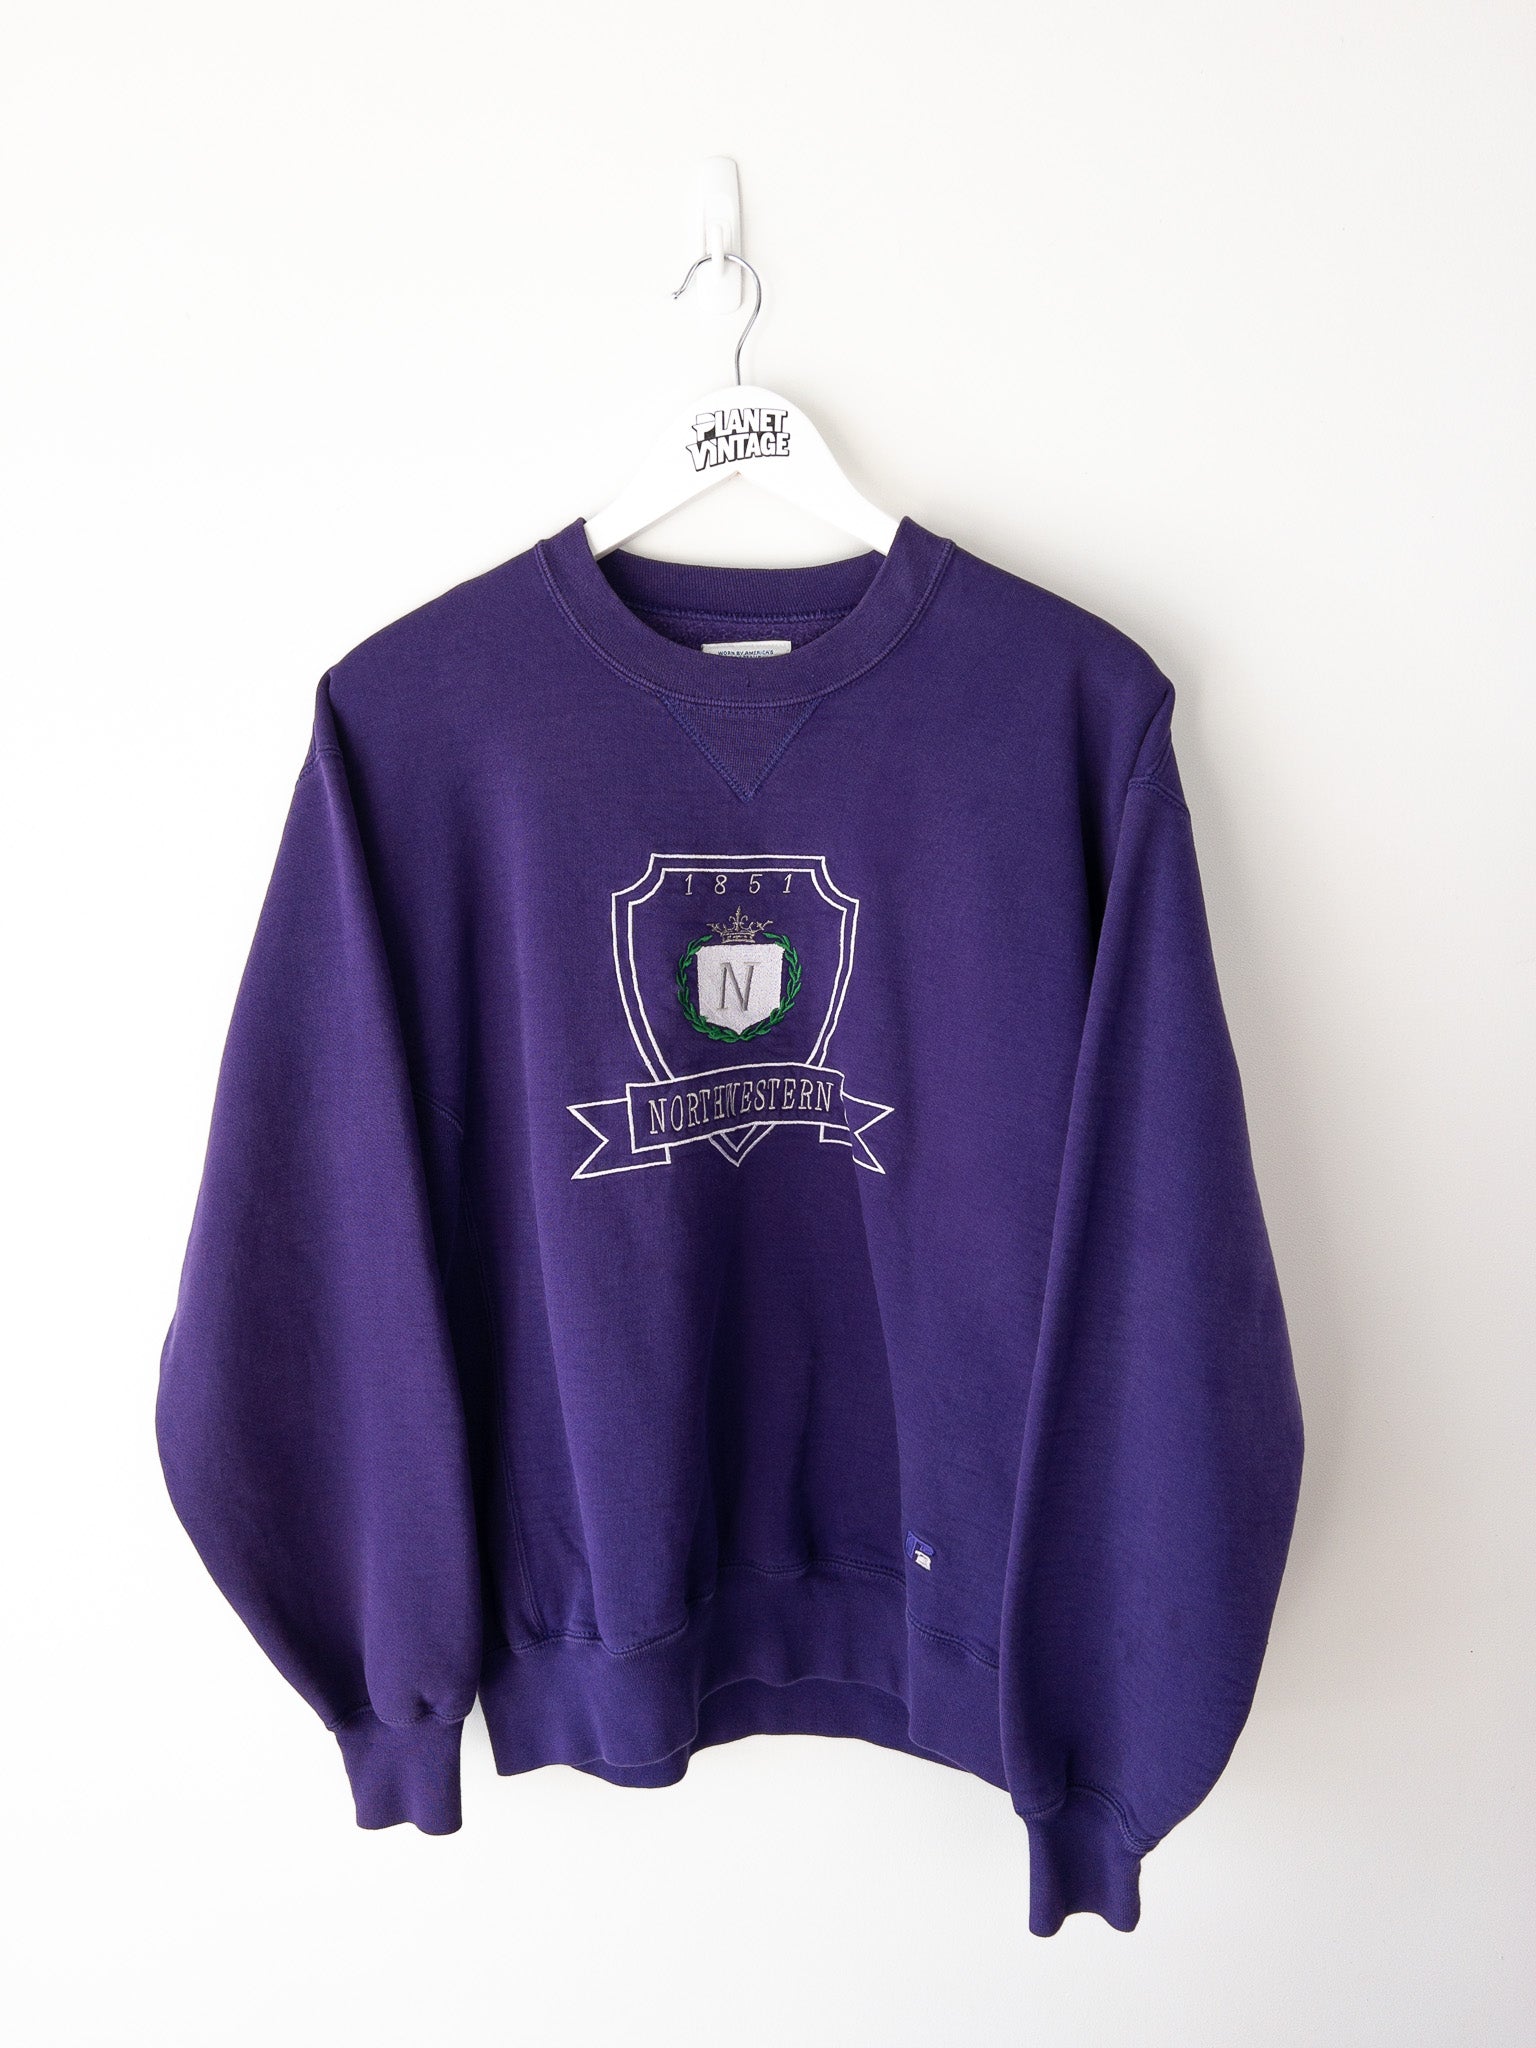 Vintage Northwestern Wildcats Sweatshirt (M)